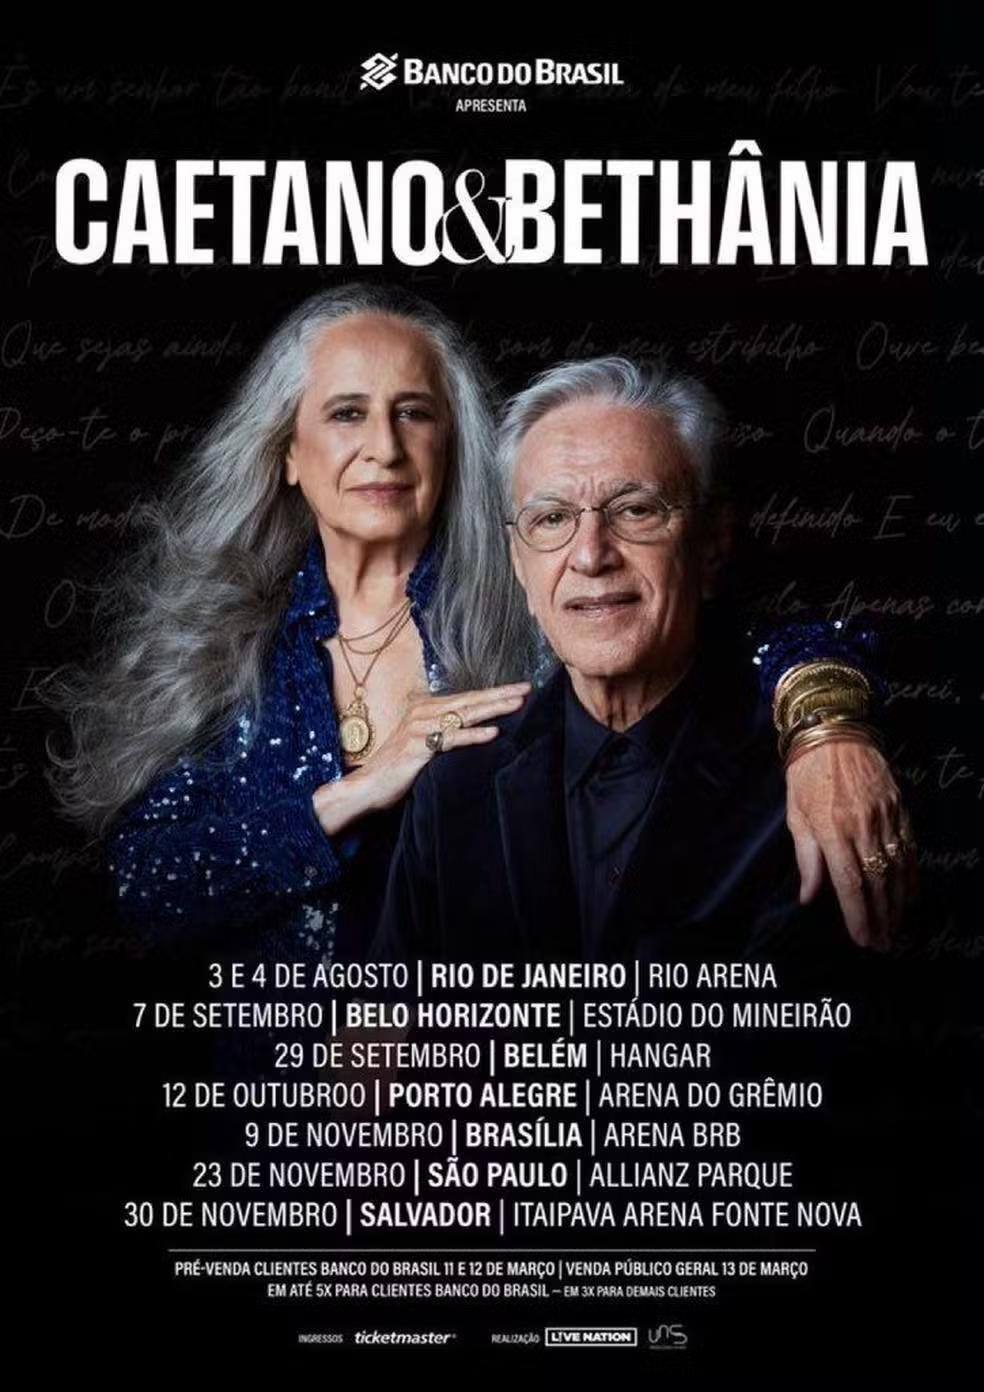 Caetano Veloso e Maria Bethânia estão de volta para uma turnê em dupla que irá rodar todo o Brasil e passará por BH